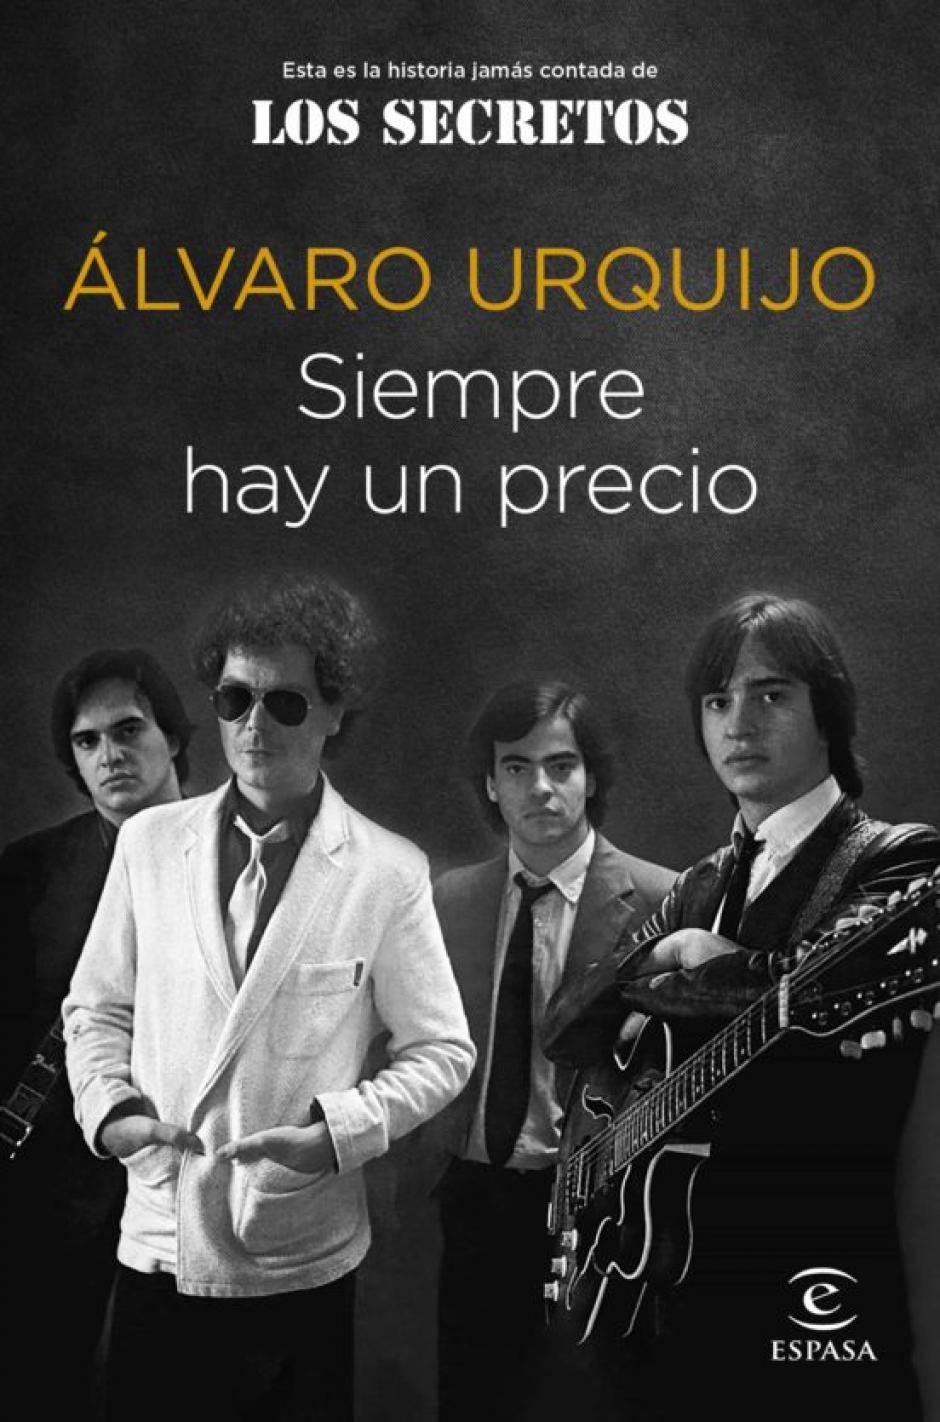 Libro «Siempre hay un precio» (Espasa), escrito por Álvaro Urquijo, fundador y guitarrista de Los Secretos